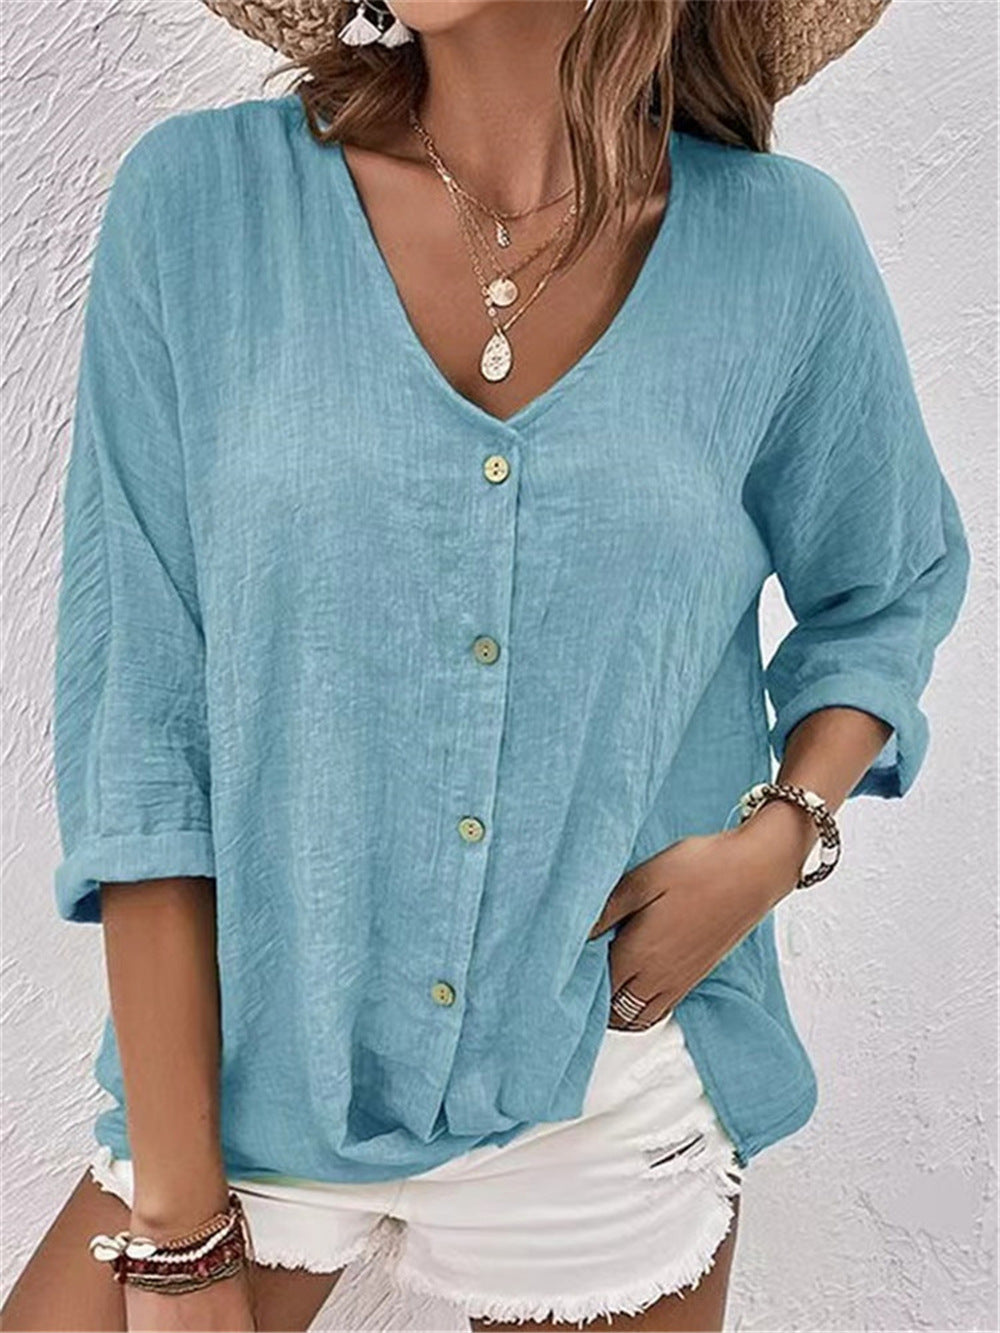 Women's Trendy Comfortable Buttons Cotton Shirt Blouses